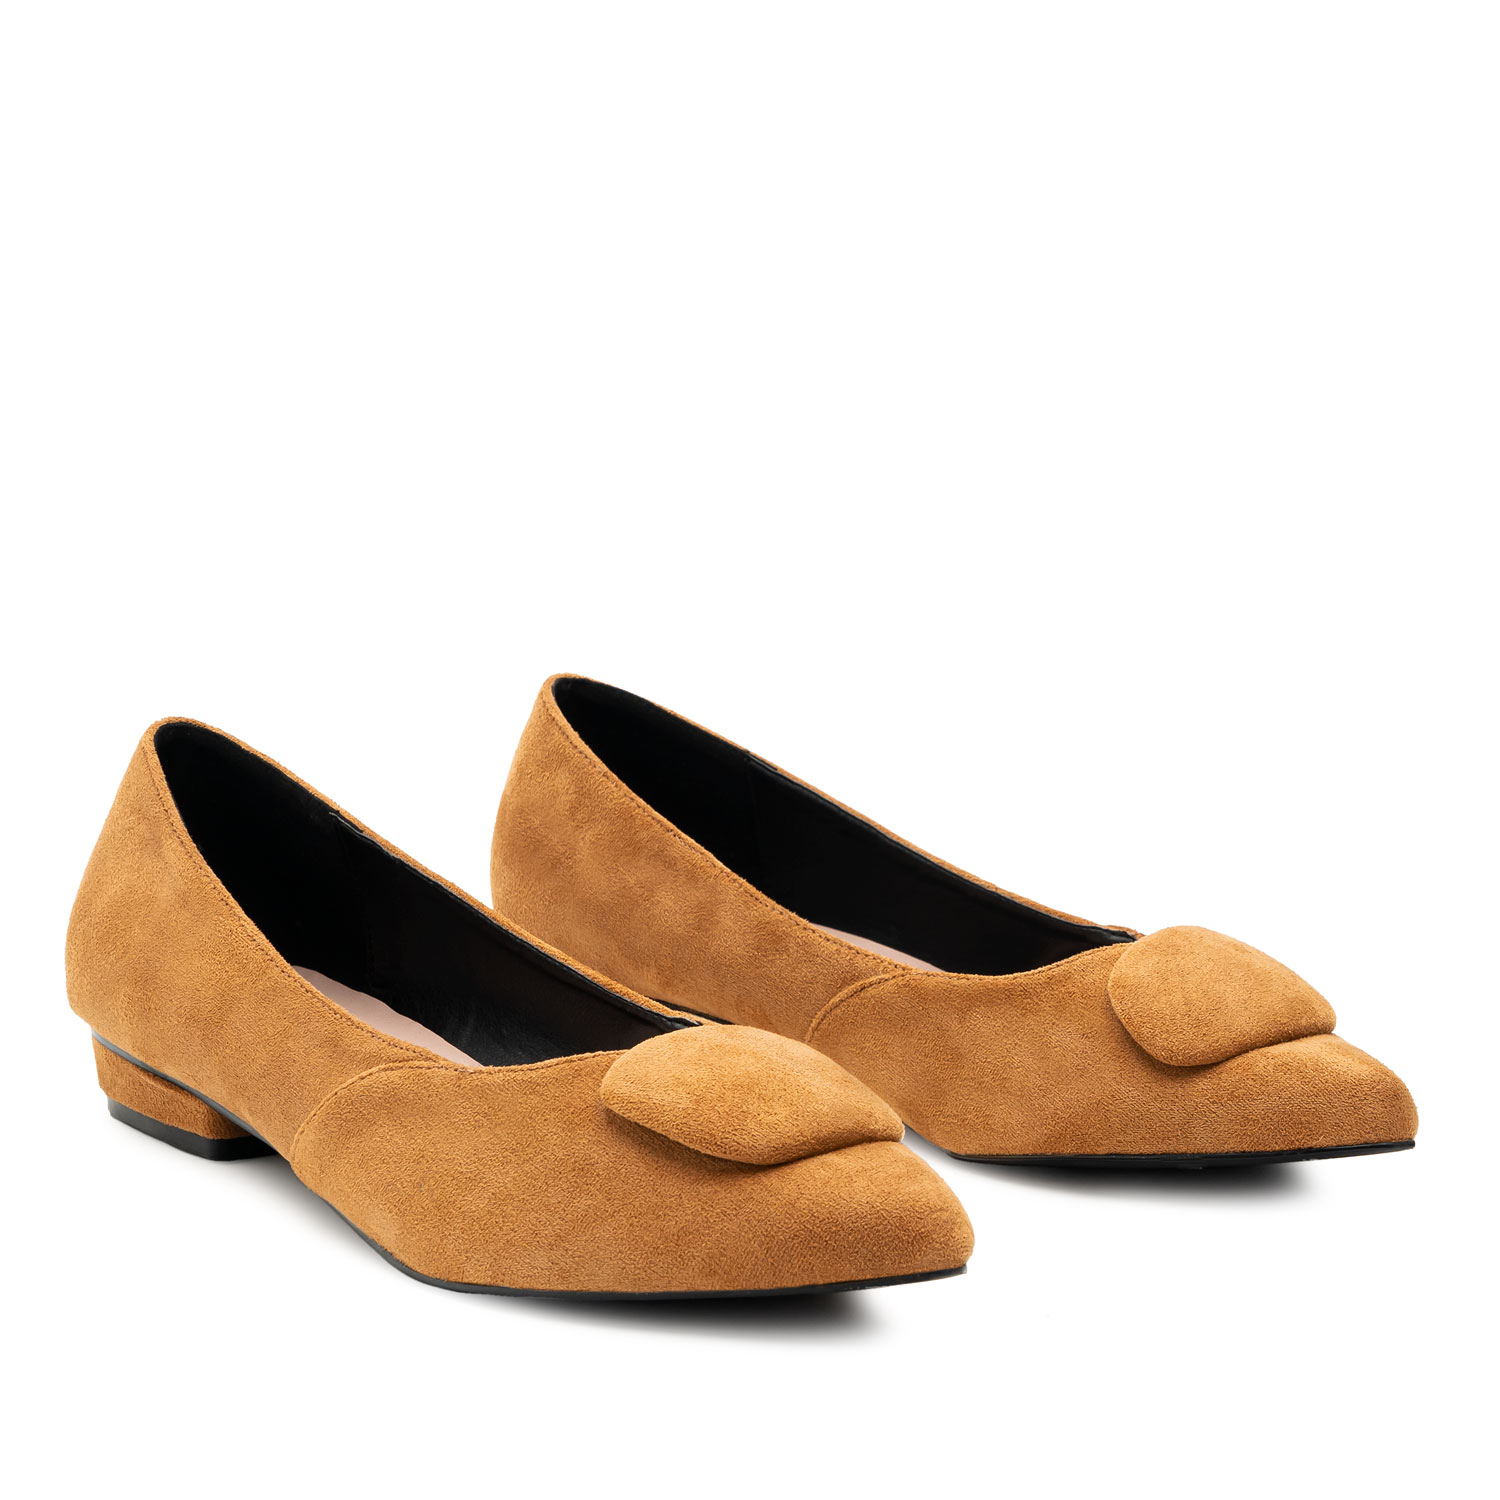 Bailarinas punta fina color camel - Zapatos vestir súper cómodos